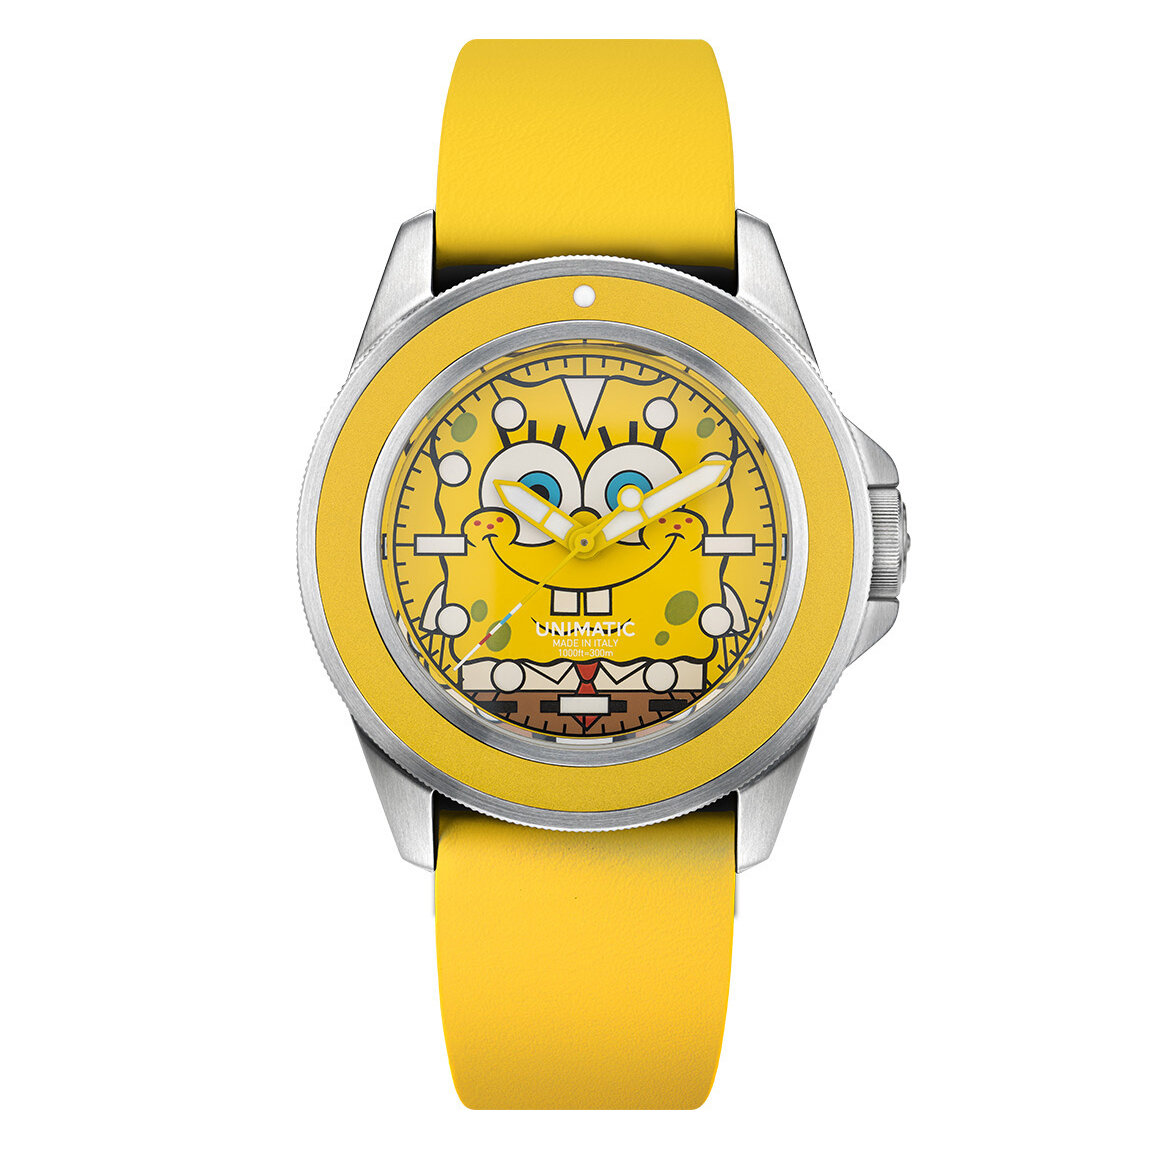 The Unimatic SpongeBob Watches